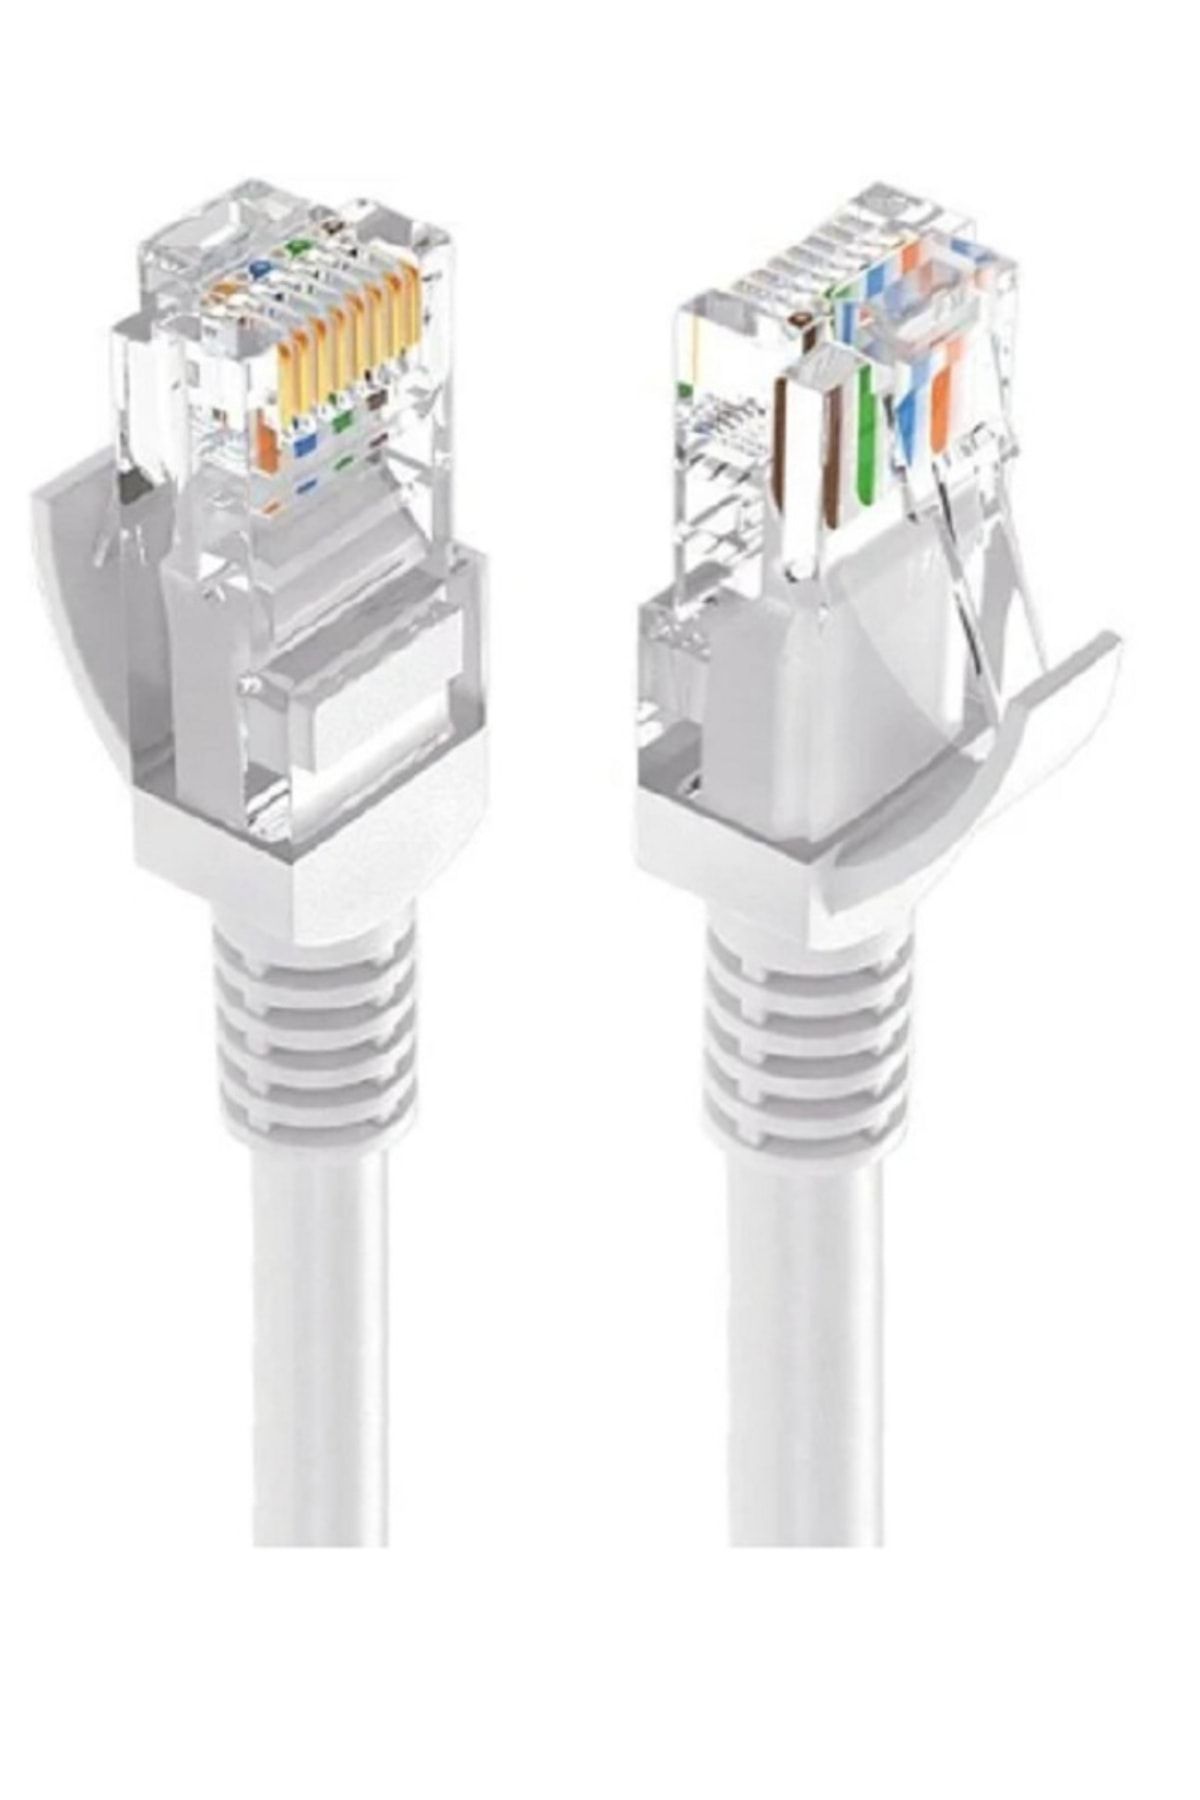 Next Nextstar Ethernet Kablo 1m